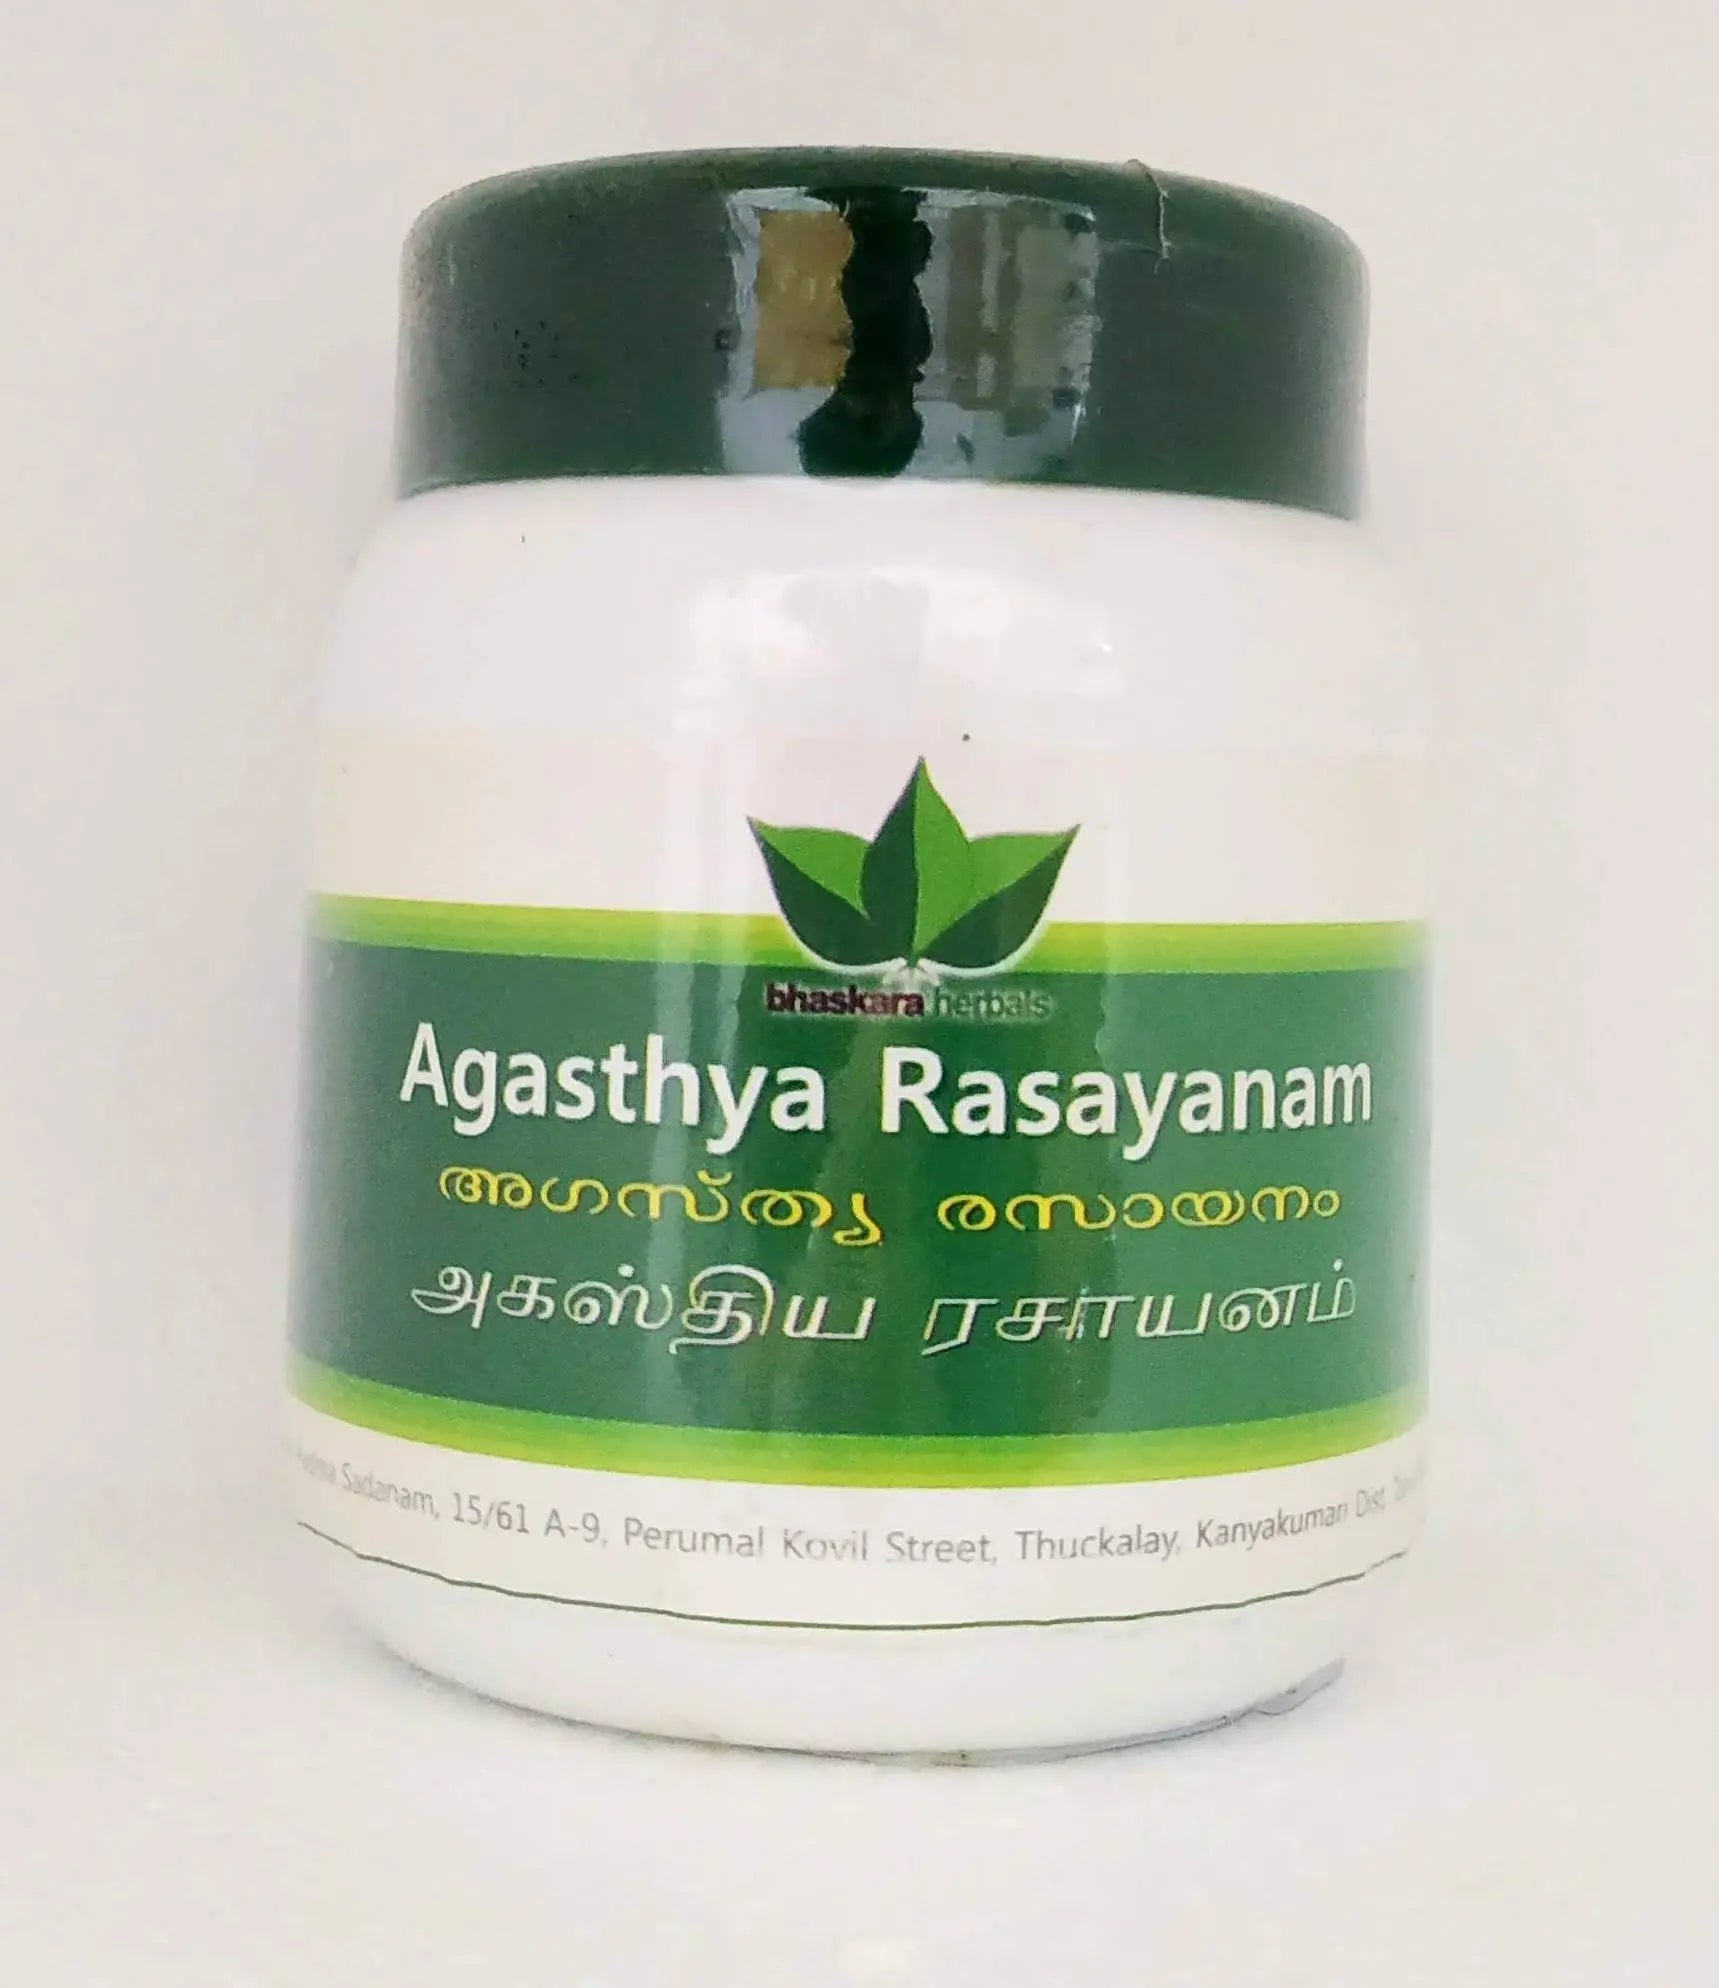 Agasthya rasayanam 200gm Bhaskara Herbals